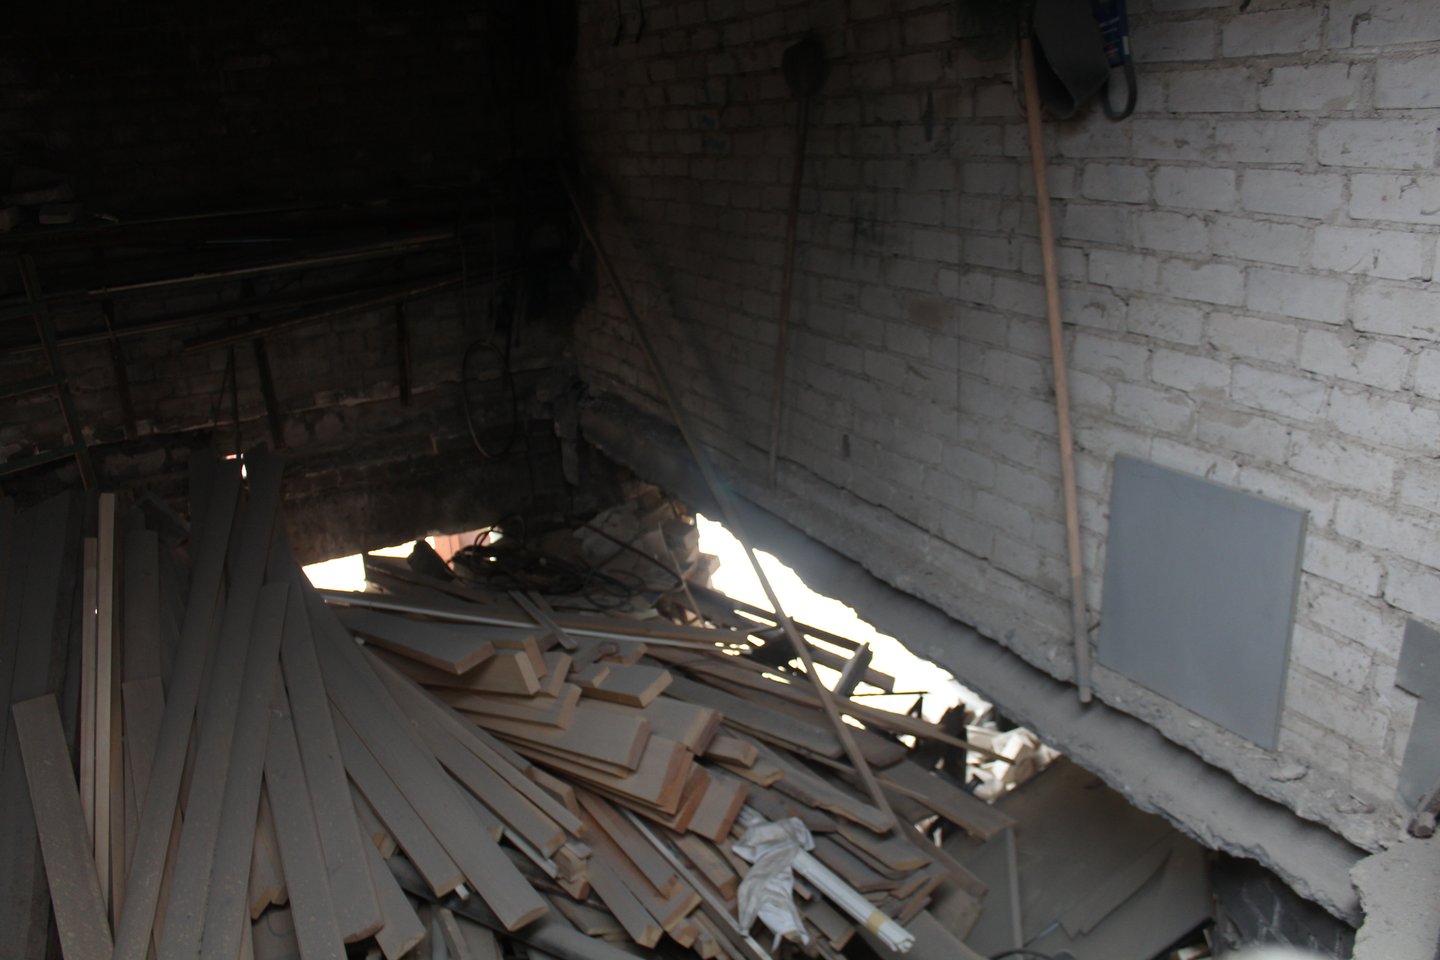  Sprogimas sugriovė tris pirmajame aukšte esančius garažus ir apgadino virš jų esančius garažus. Juos taip pat teks griauti.<br> R.Vitkaus nuotr.